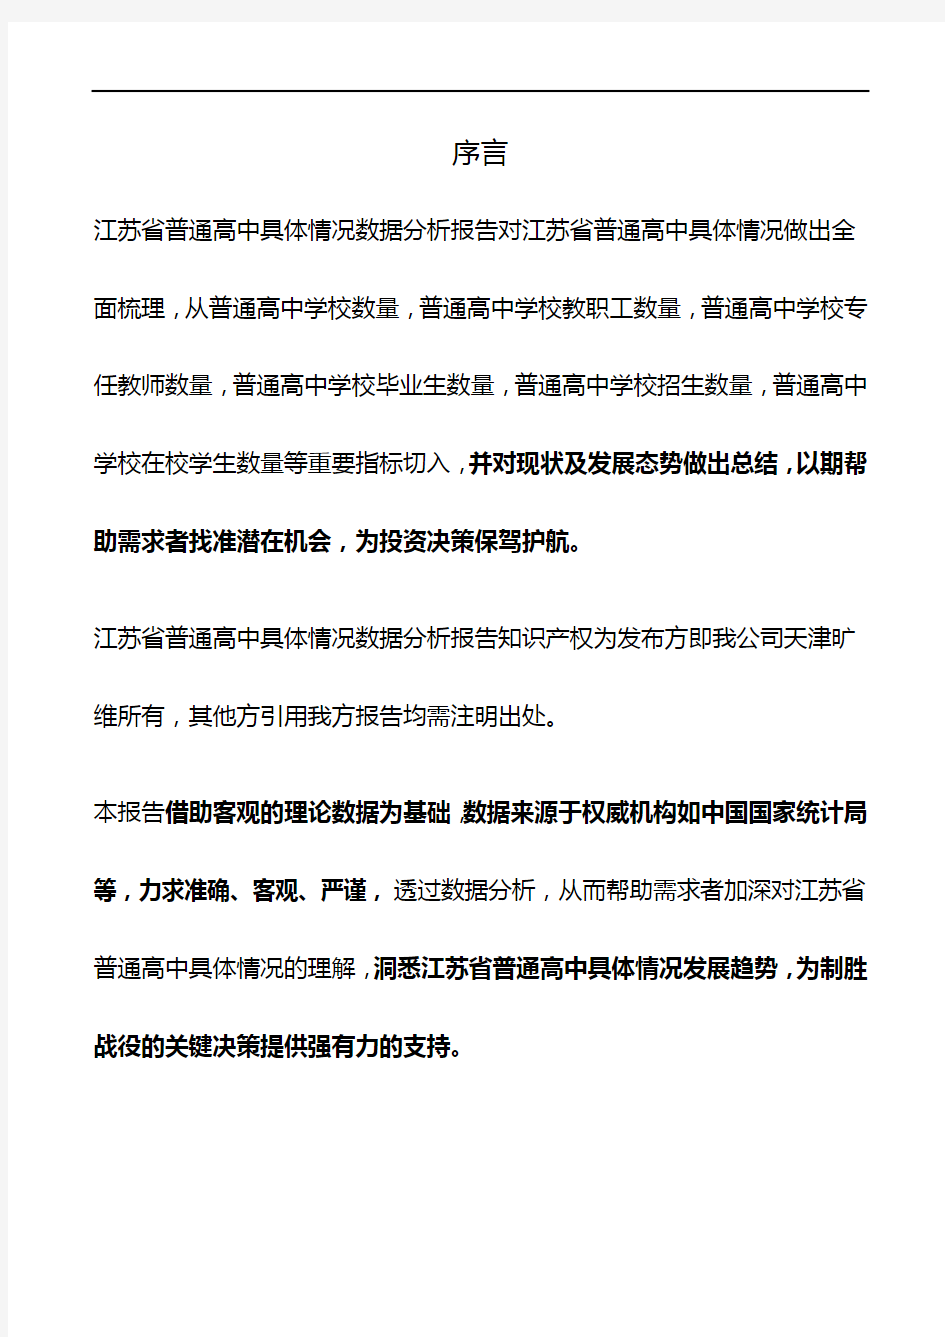 江苏省普通高中具体情况3年数据分析报告2019版